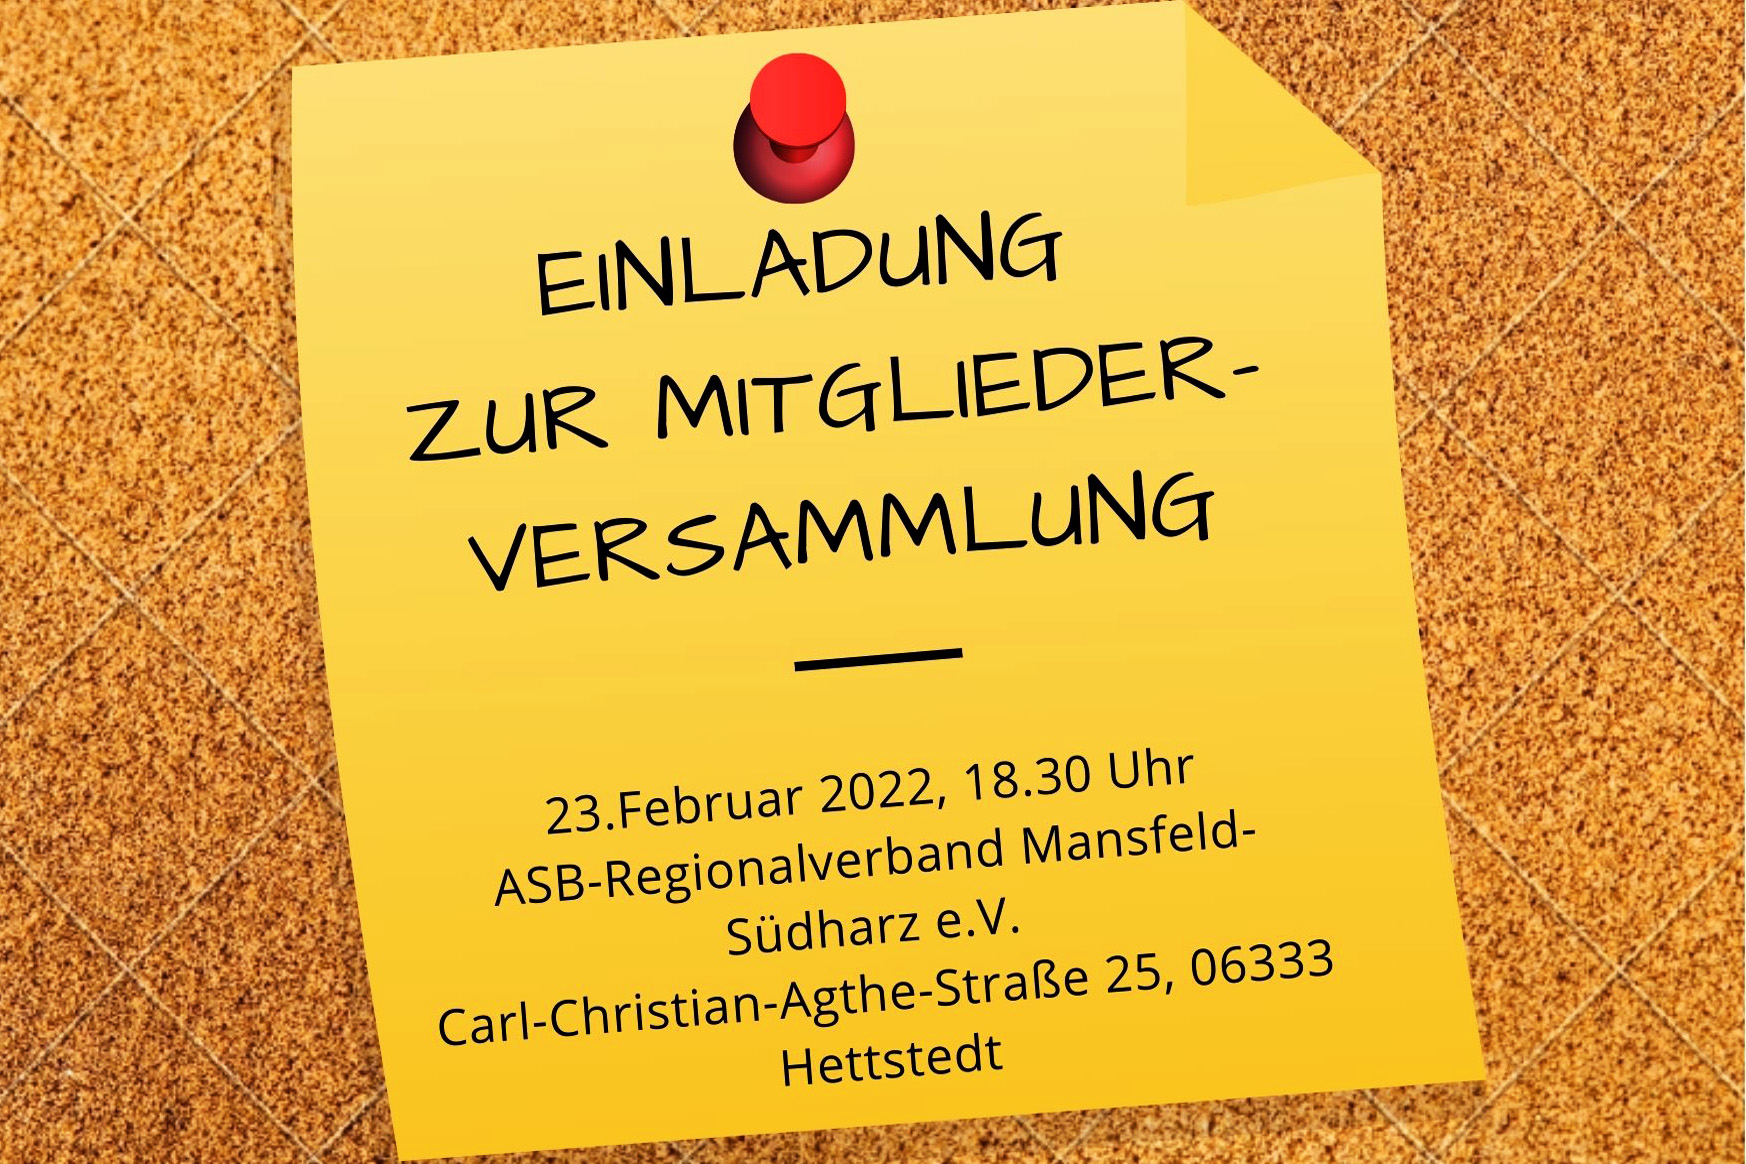 Einladung zu unserer Mitgliederversammlung am 23. Februar 2022 in der Carl-Christian-Agthe-Straße 25 in Hettstedt.